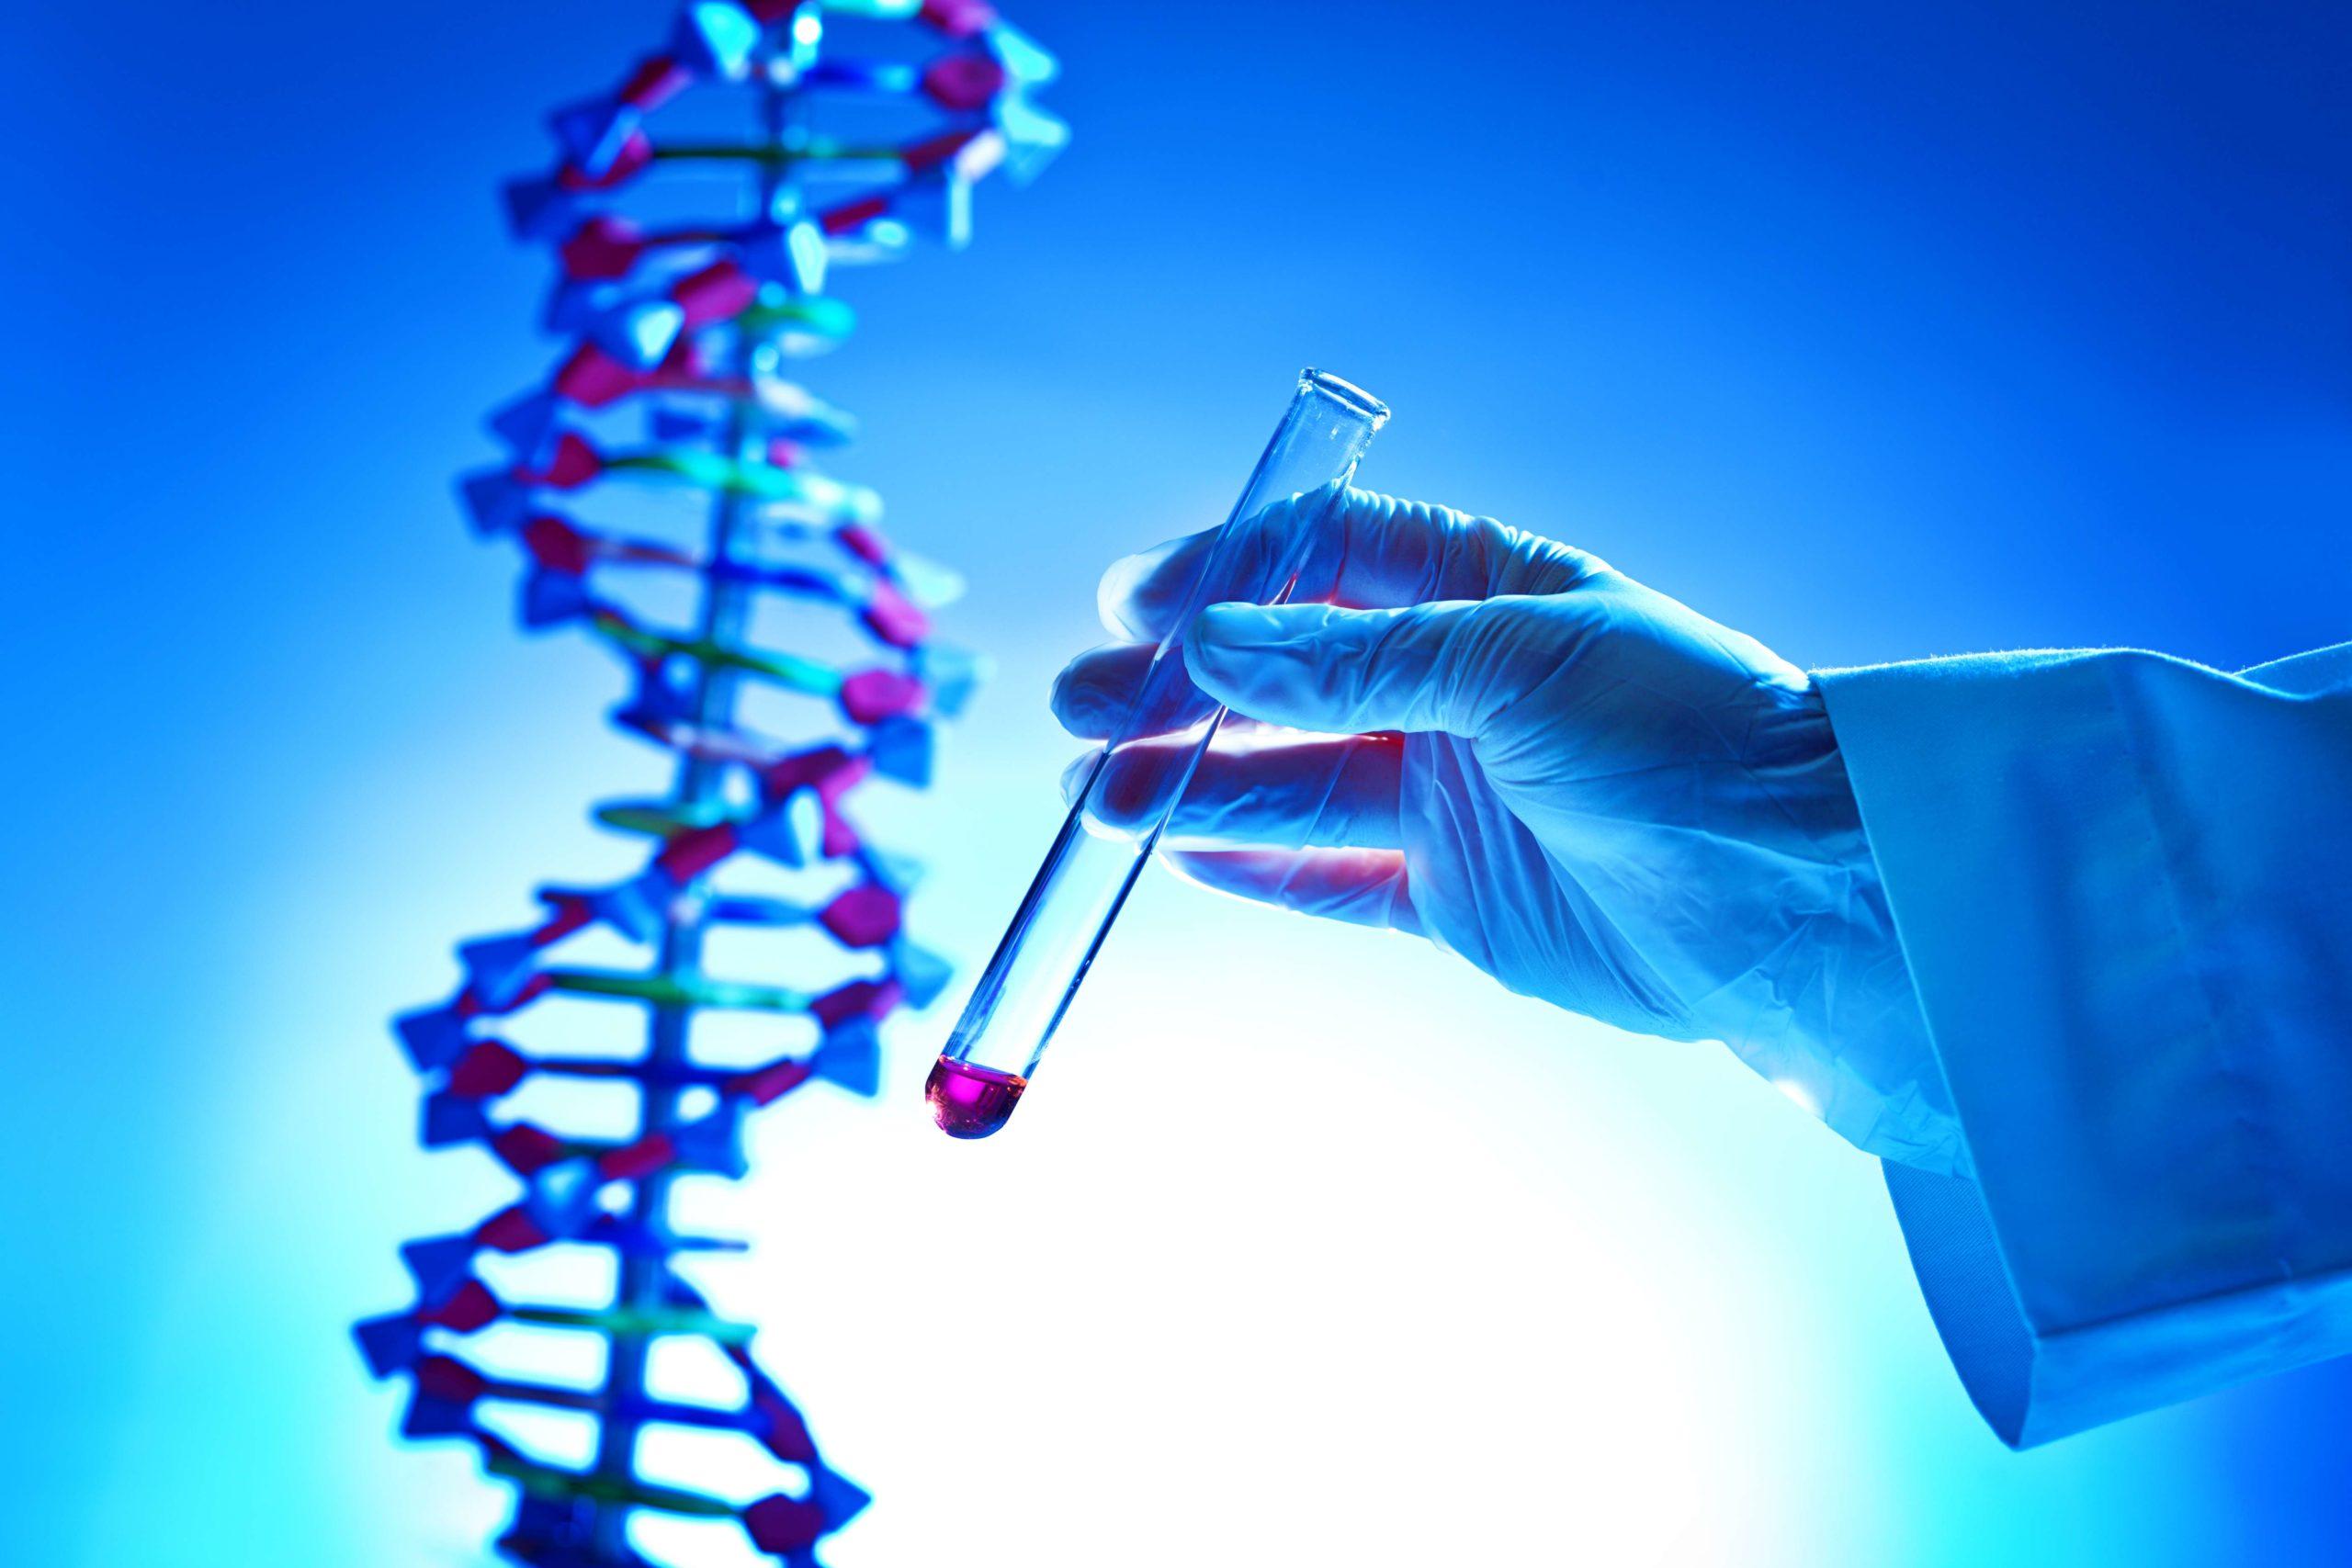 Hand hält ein Reagenzglas für chemische Lösungen in einem DNA-Forschungslabor für Biochemie